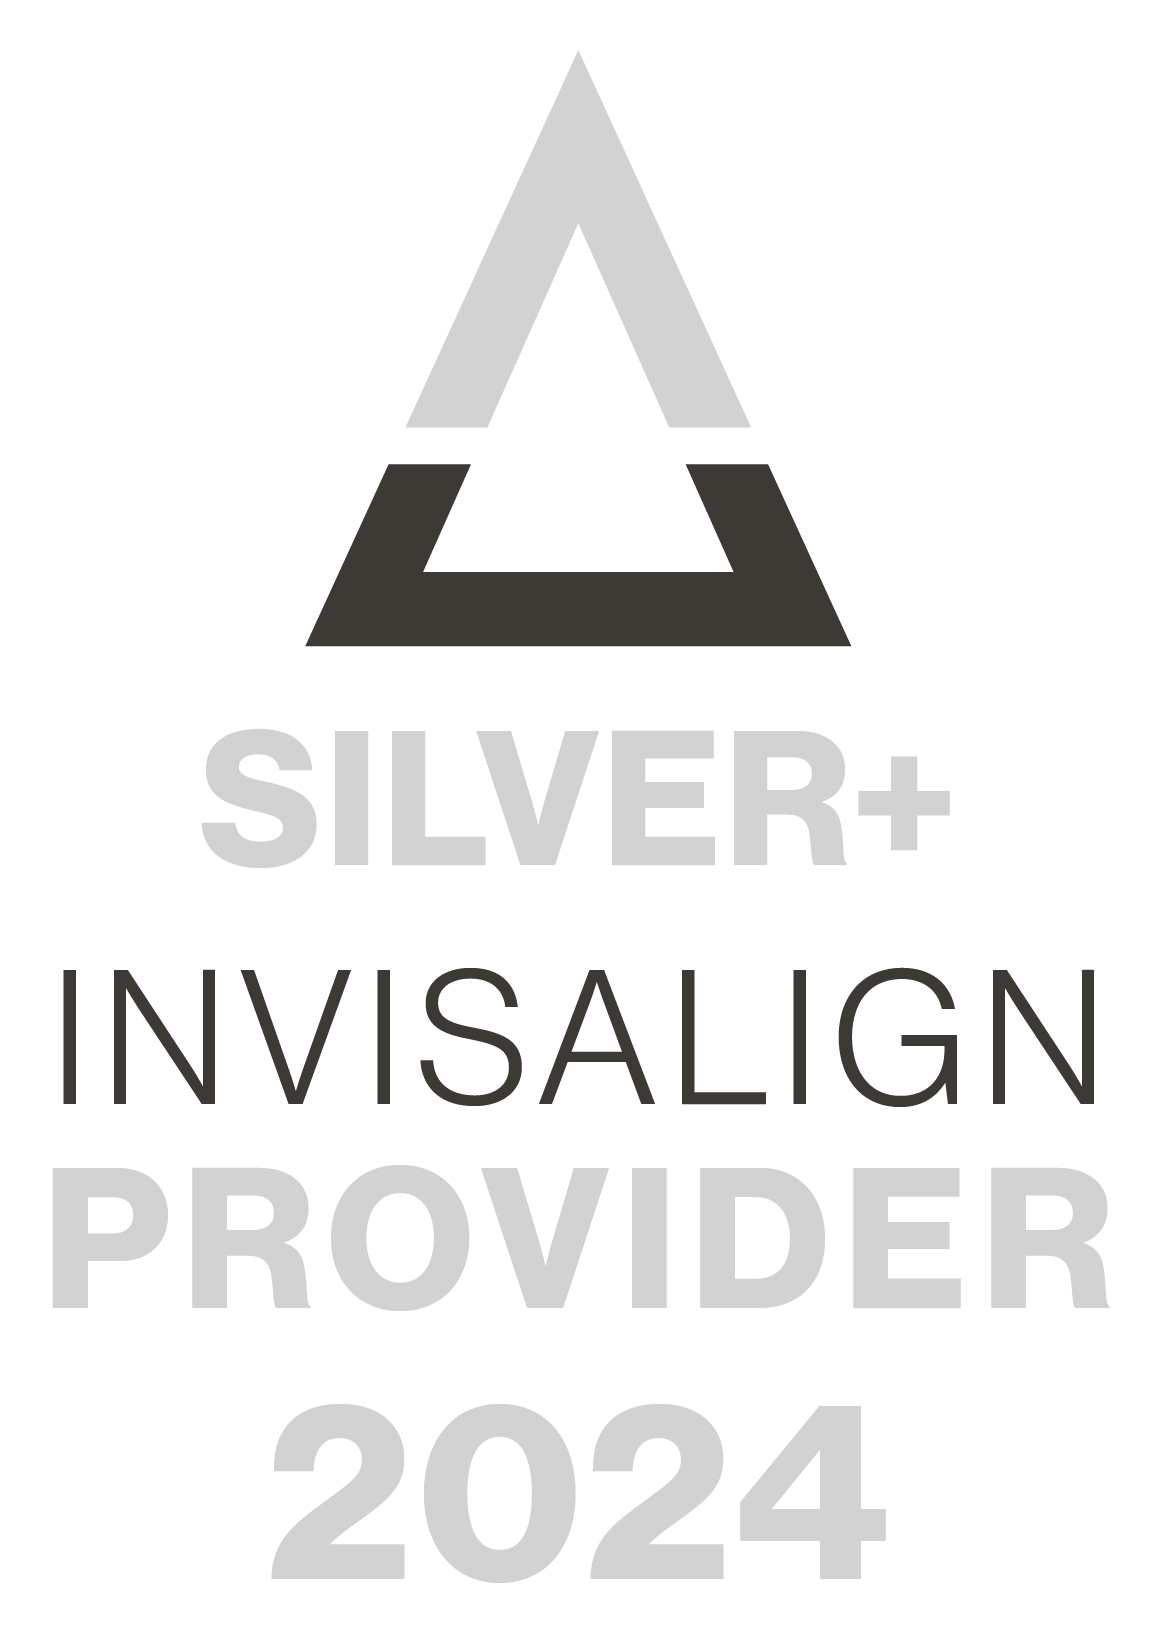 Silver+ Invisalign Provider 2024